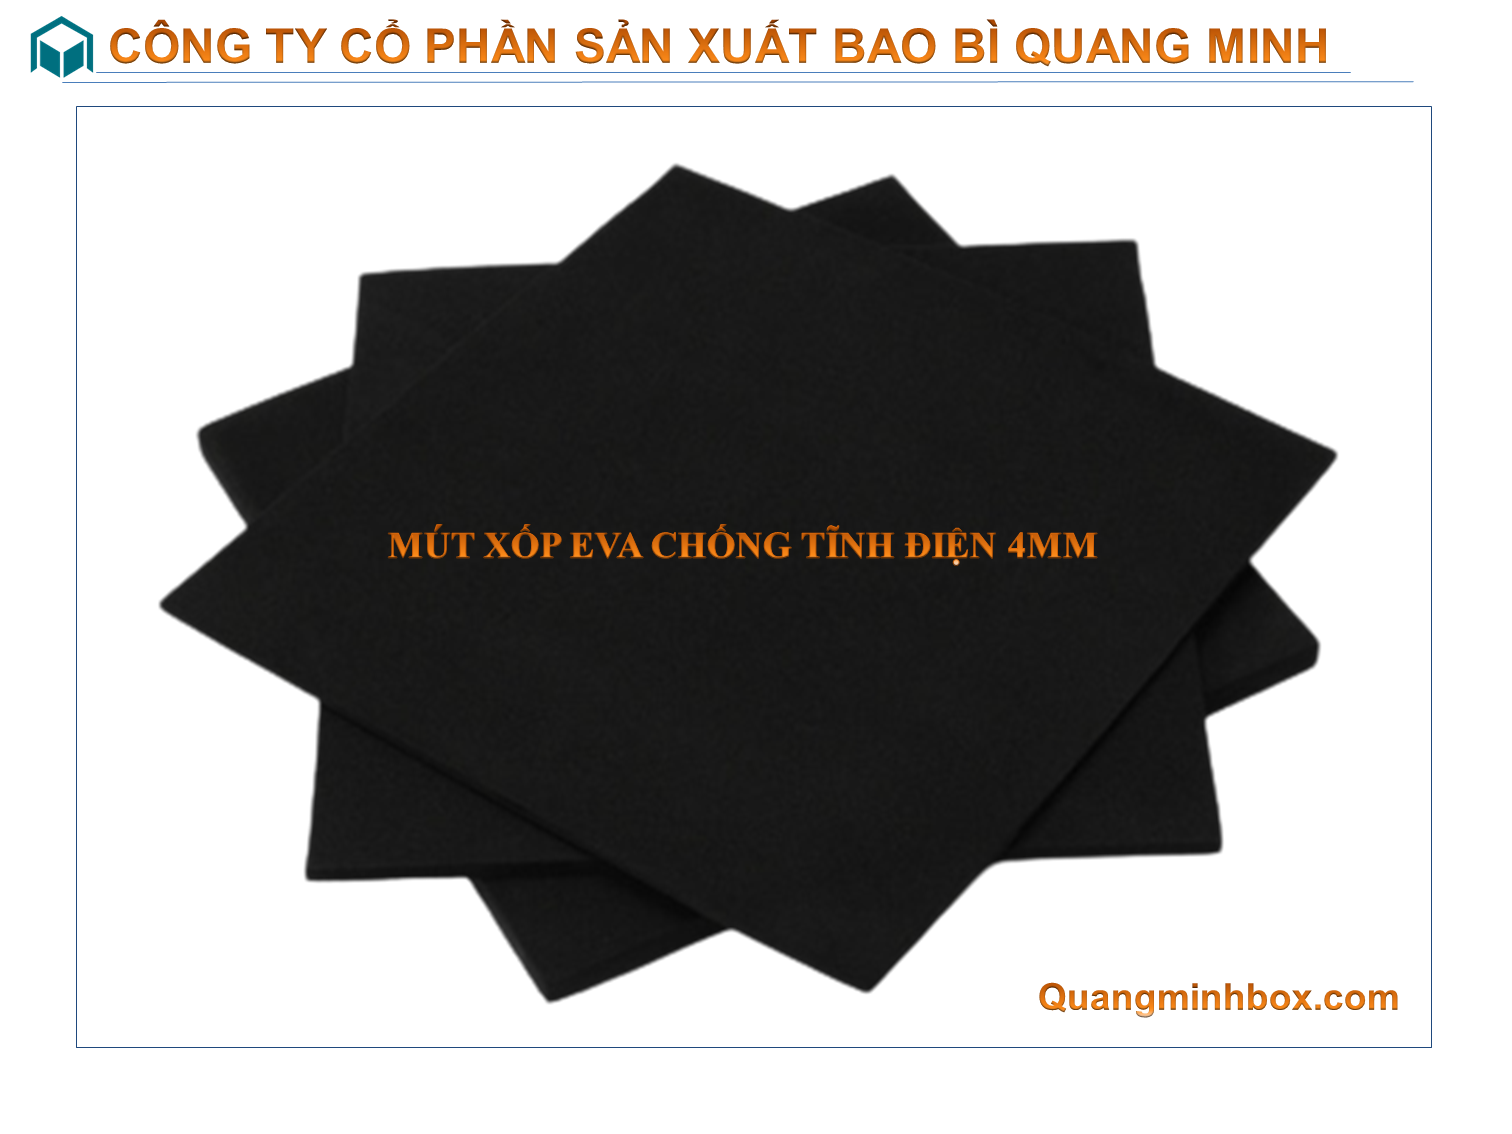 mut-xop-eva-chong-tinh-dien-4mm